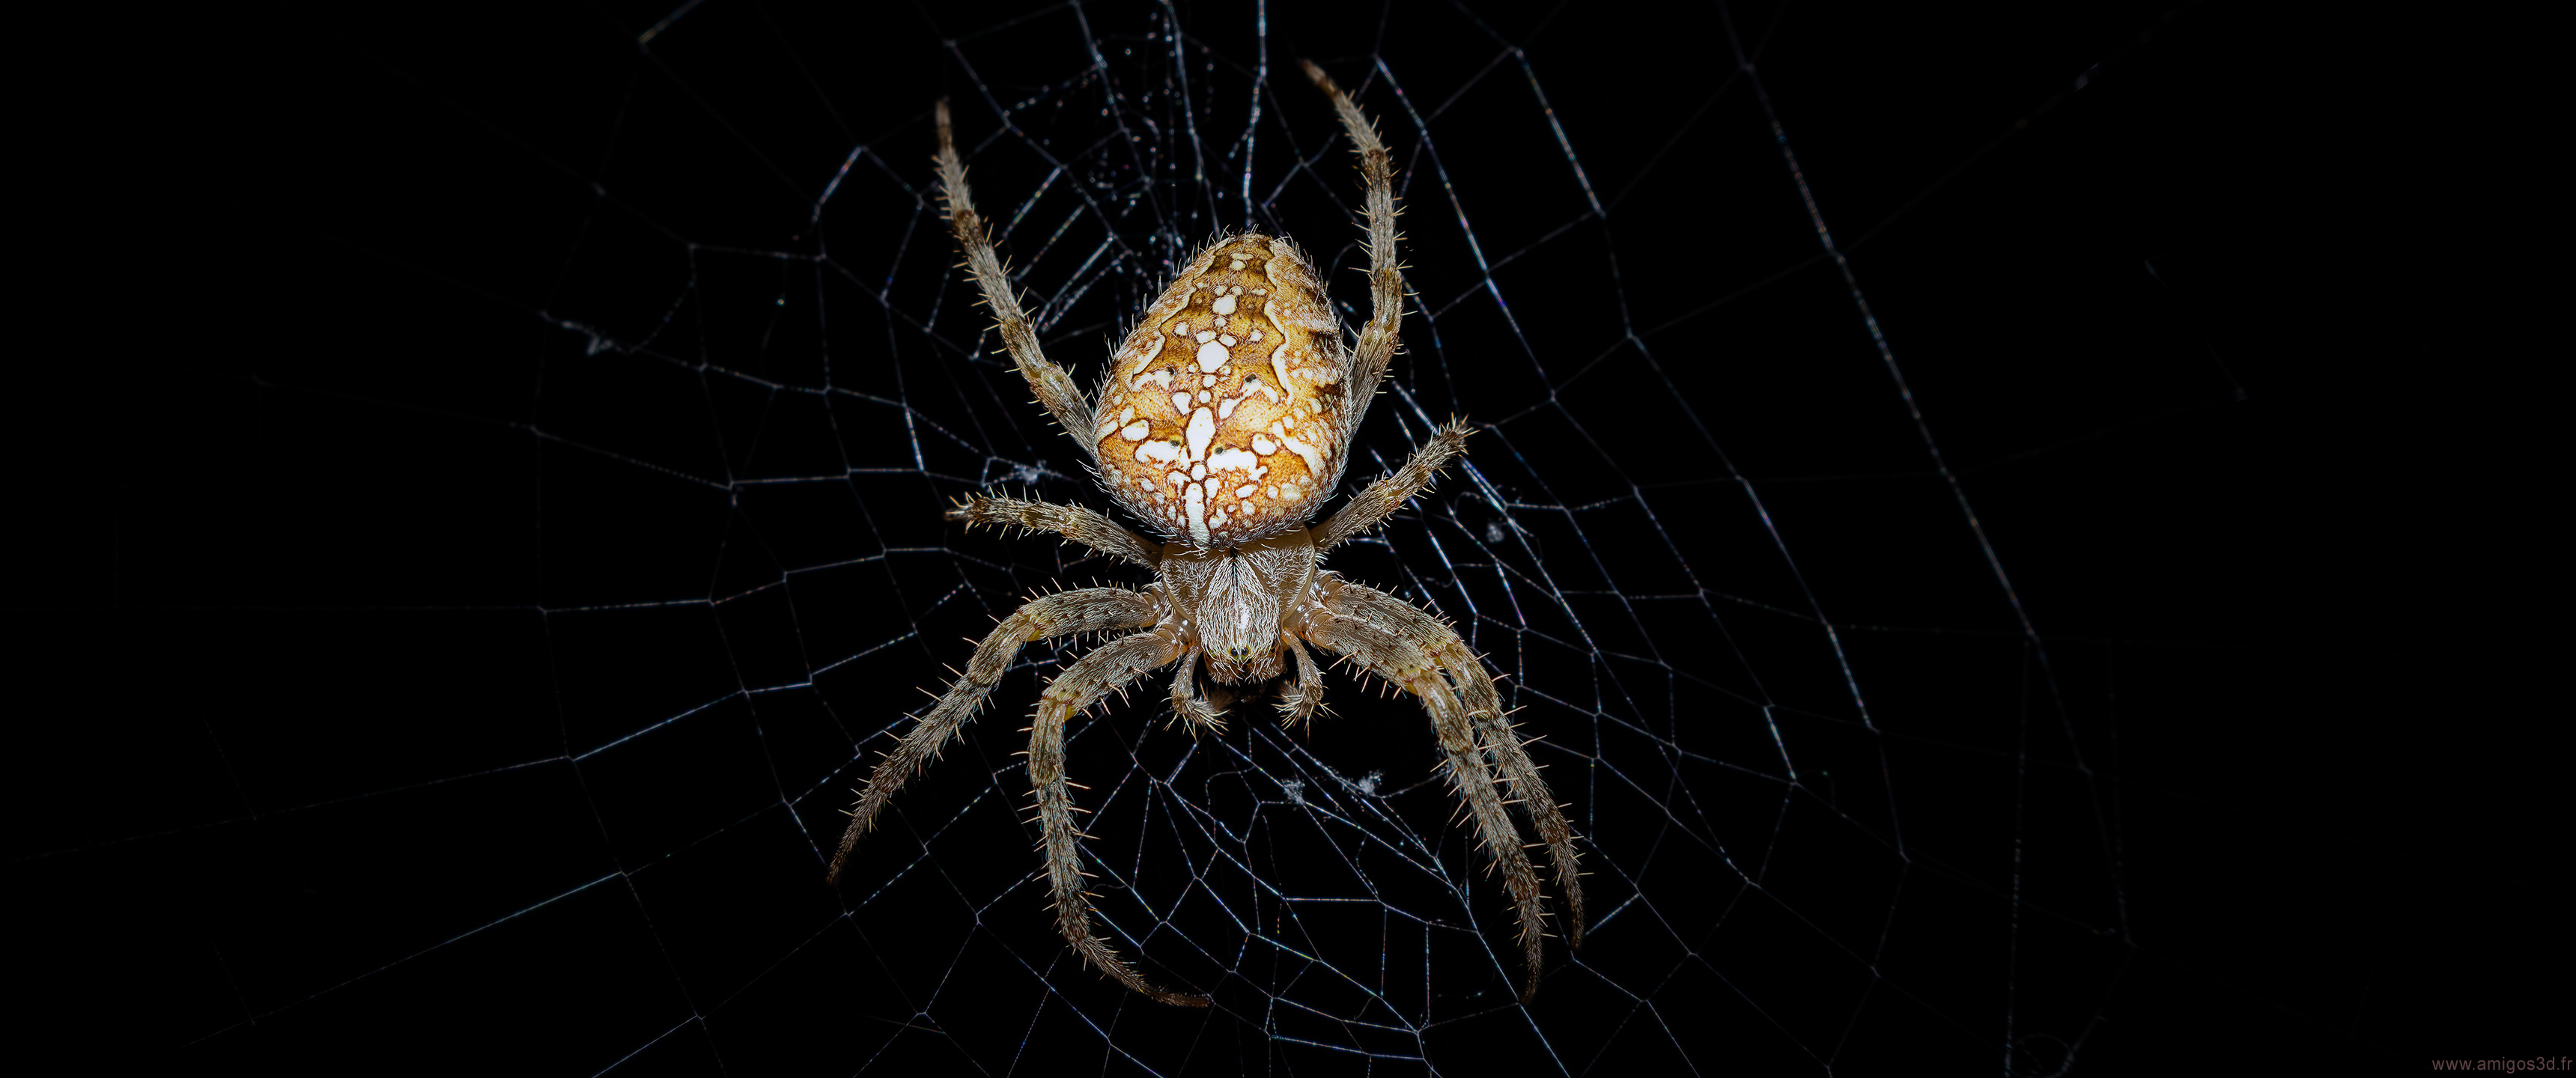 251-spider